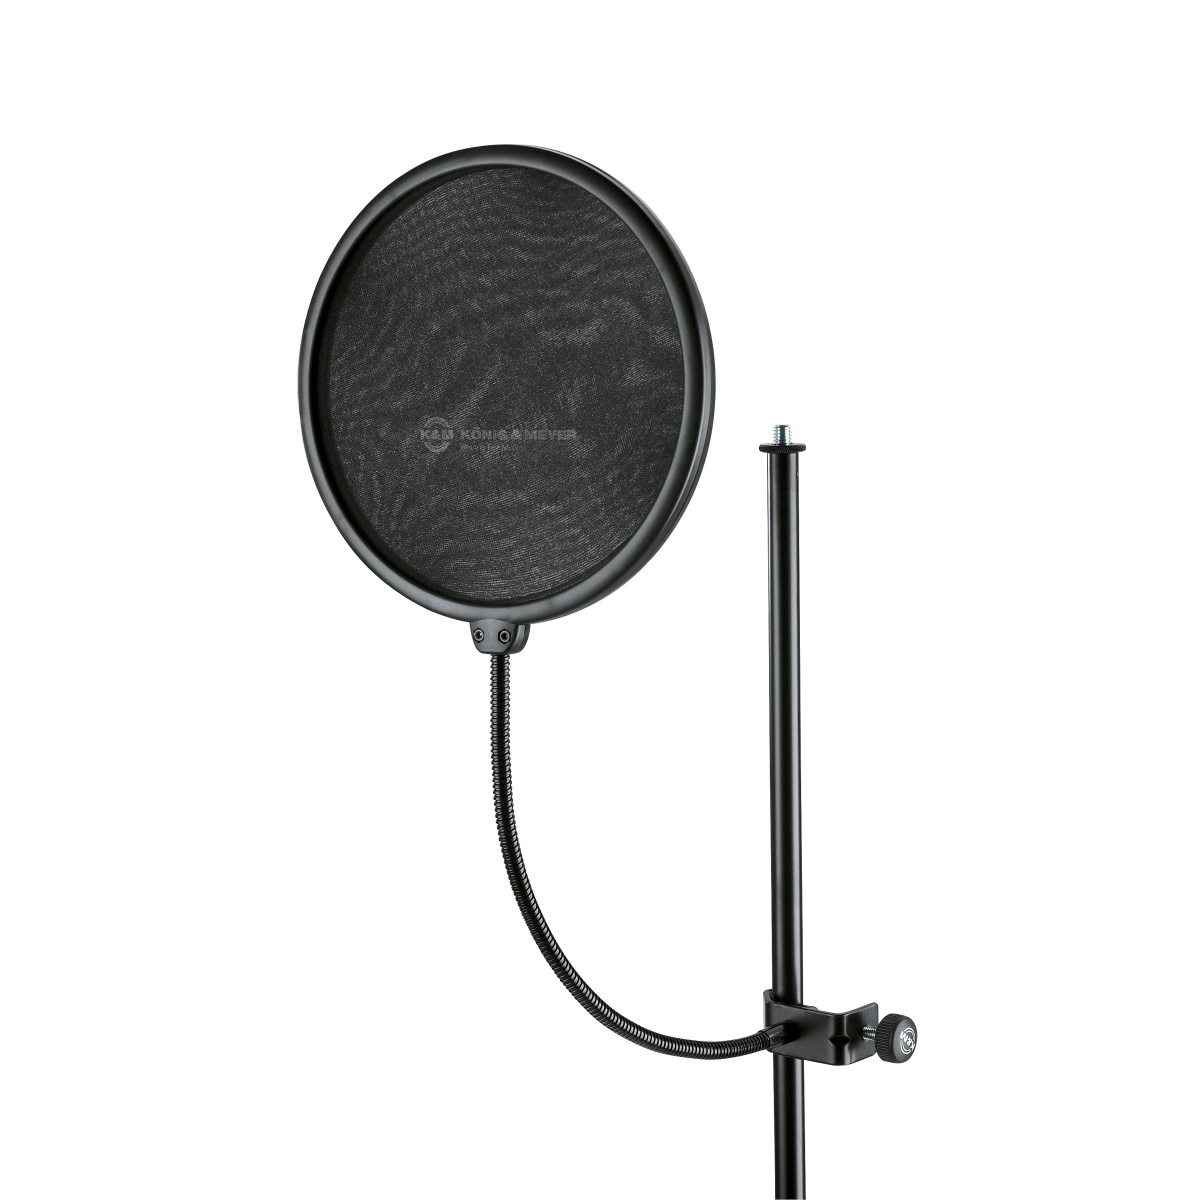 Аксессуары для микрофонов K&M 23966-000-55 акустический экран jbh akmpp с держателем для микрофона поп фильтром на напольной стойке